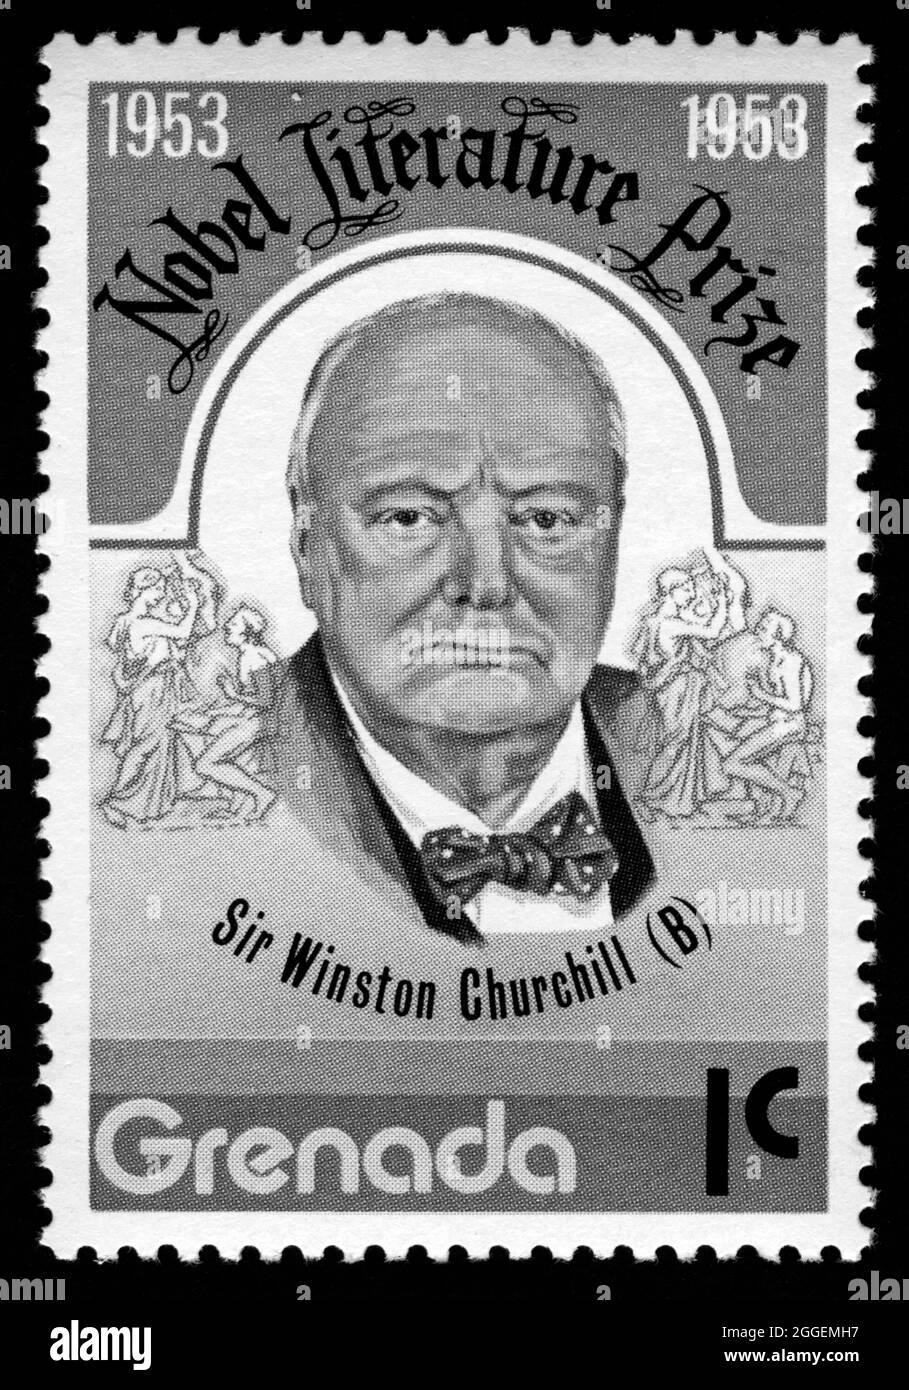 Stamp print in Grenada, Sir Winston Churchill,Nobel Stock Photo